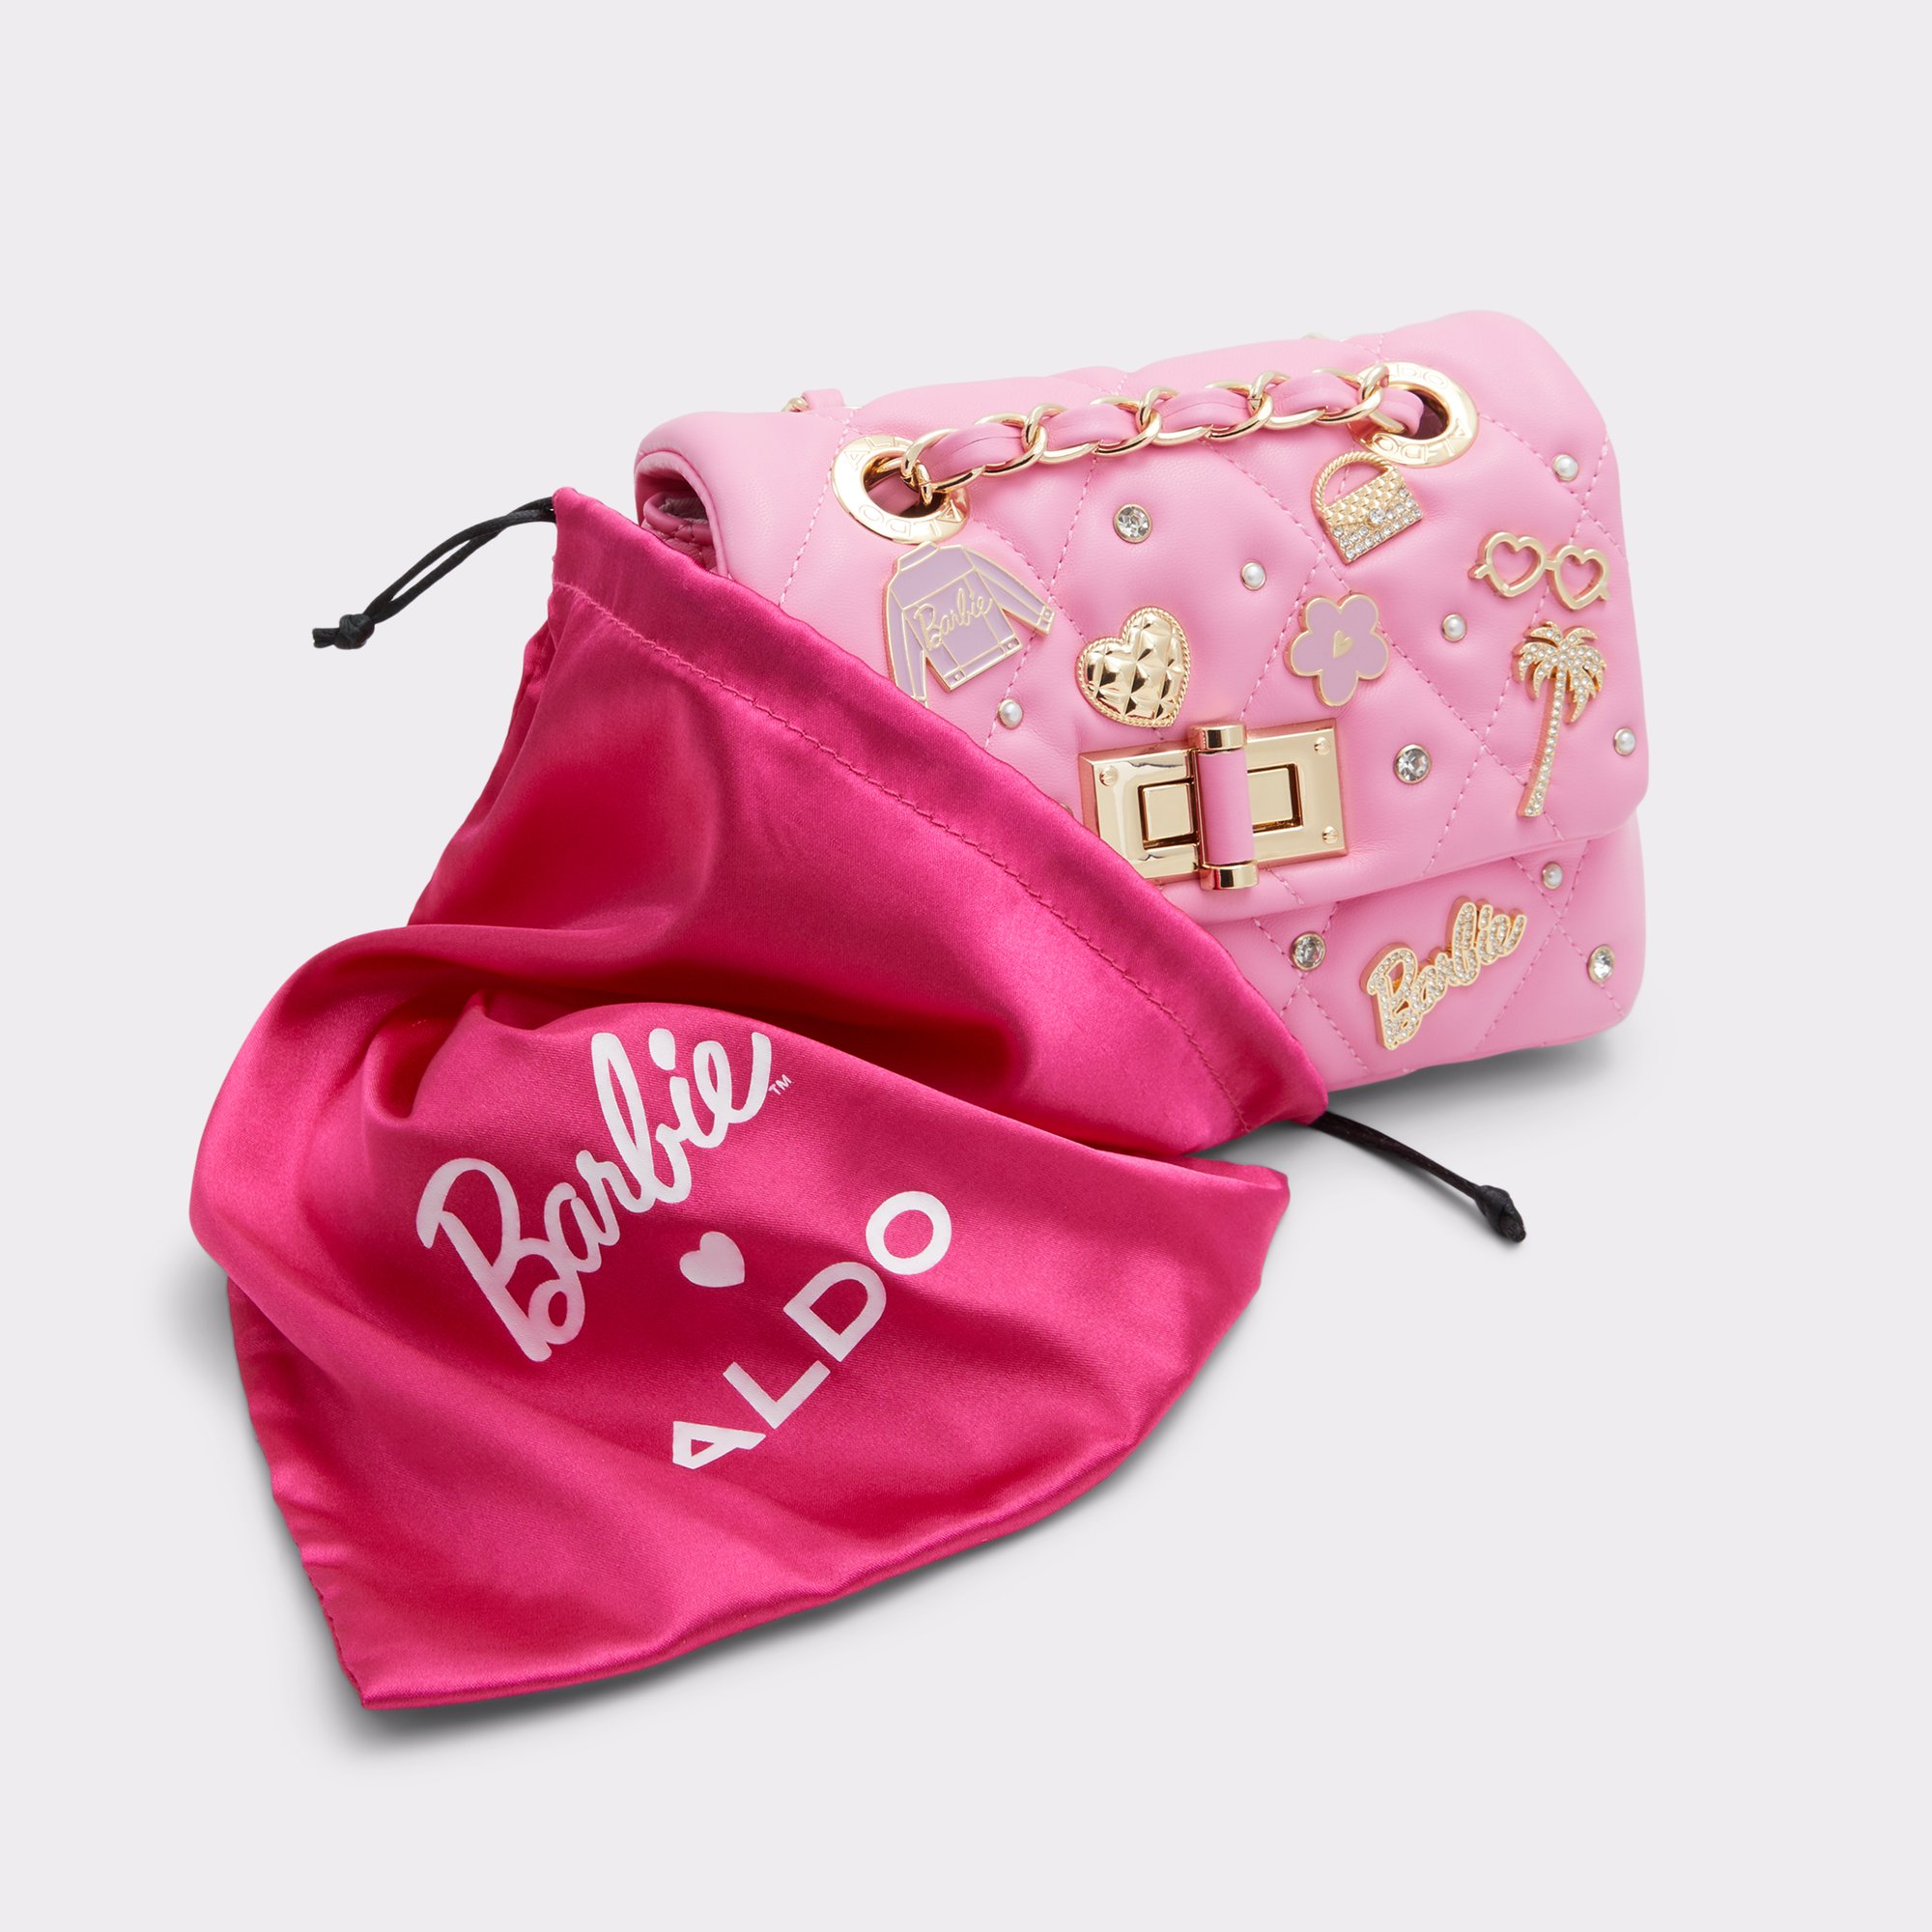 Barbie Handbag -  Canada